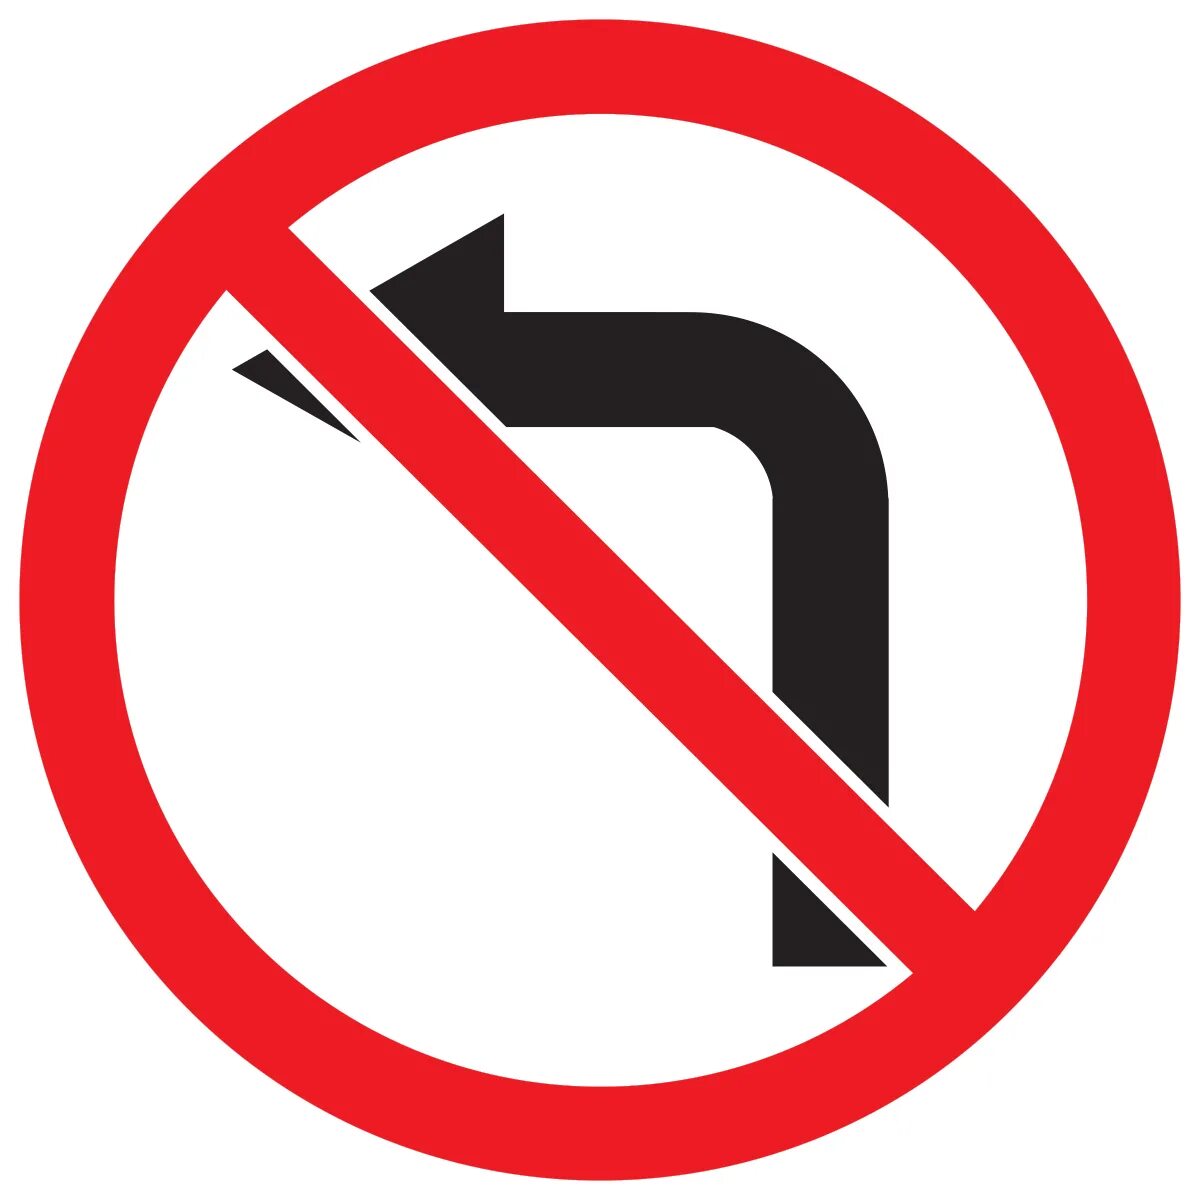 Запрещенный поворот. Знак 3.18.2. Дорожный знак 3.18.2 поворот налево запрещен. Знак 3.18.2 поворот направо запрещен. Знак 3.18.2 поворот налево запрещен запрещает поворот налево.